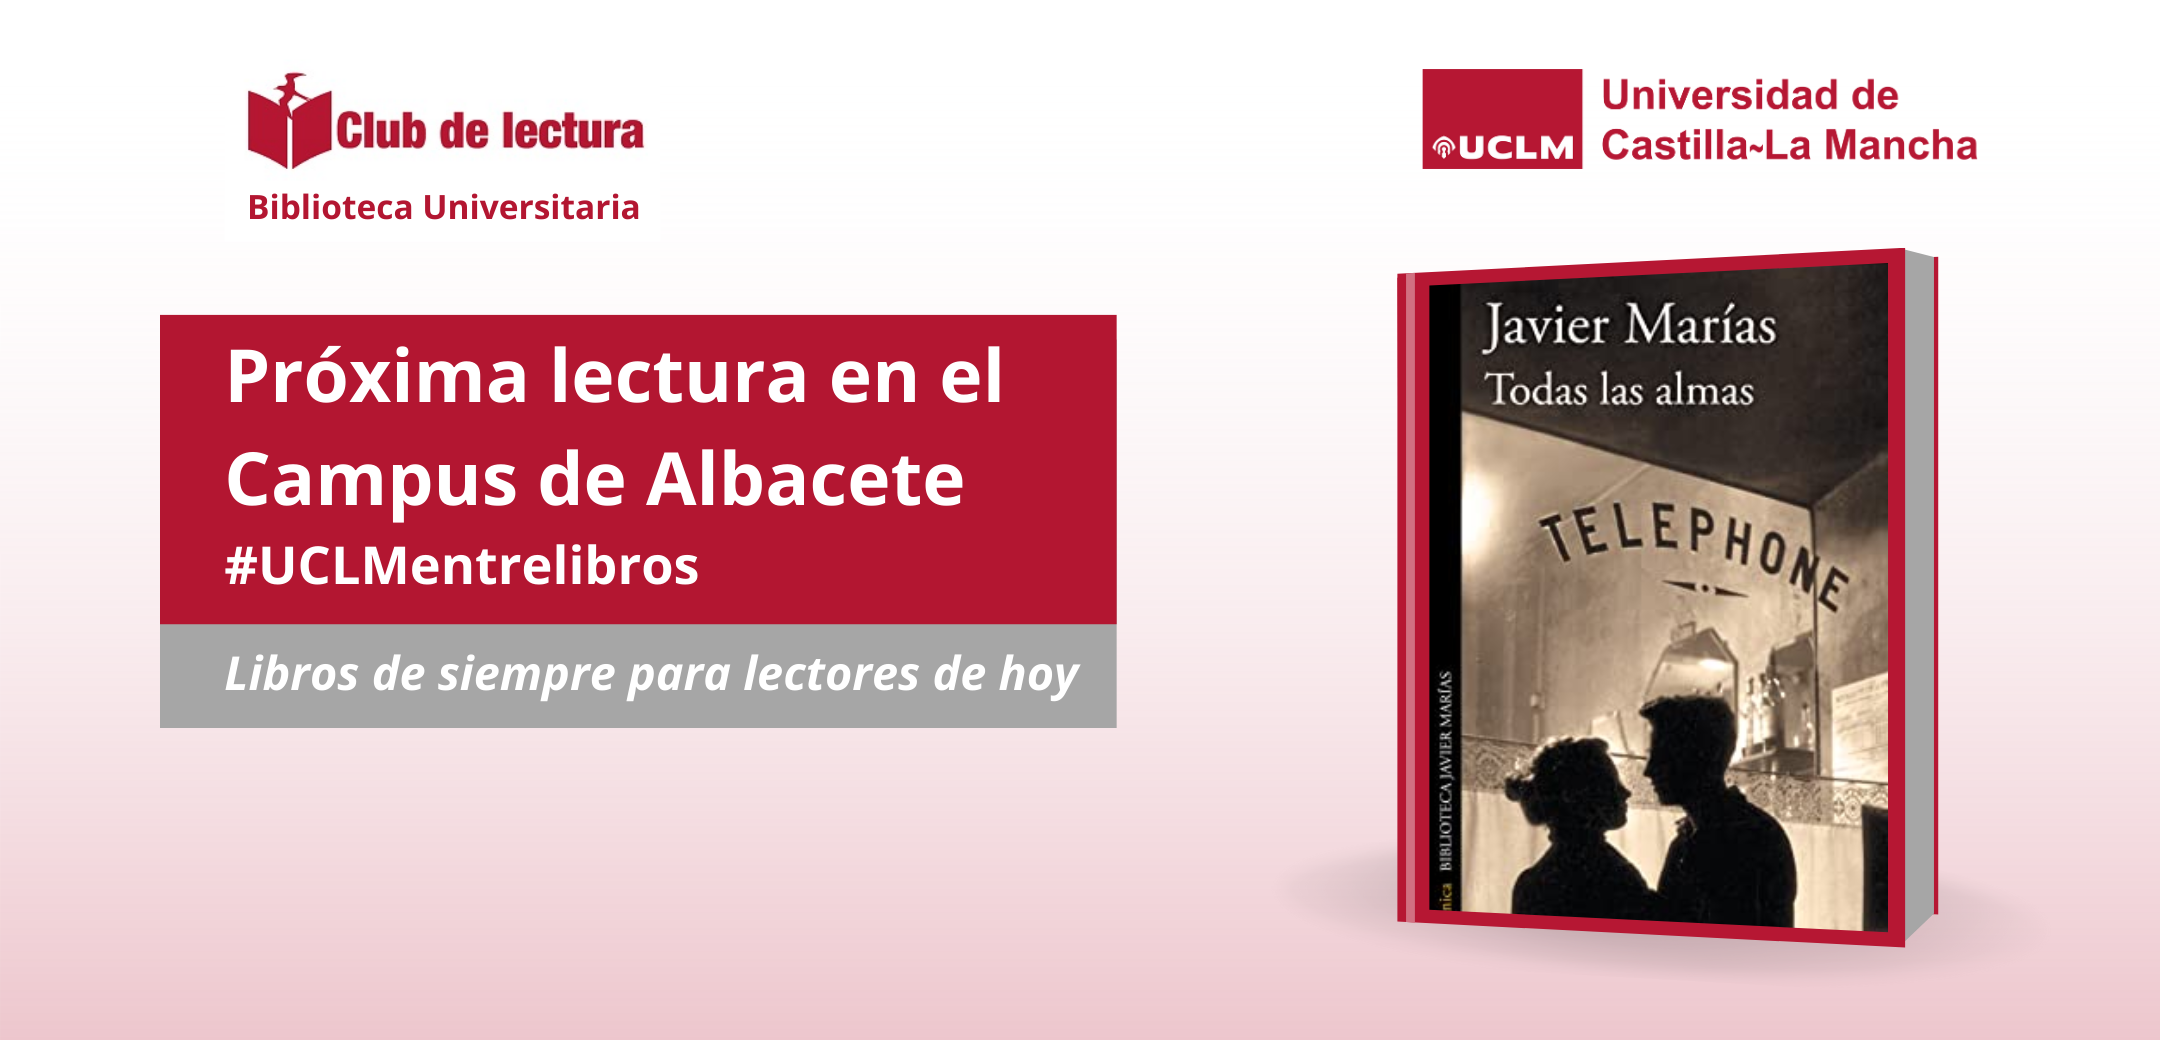 Club de lectura del campus de Albacete